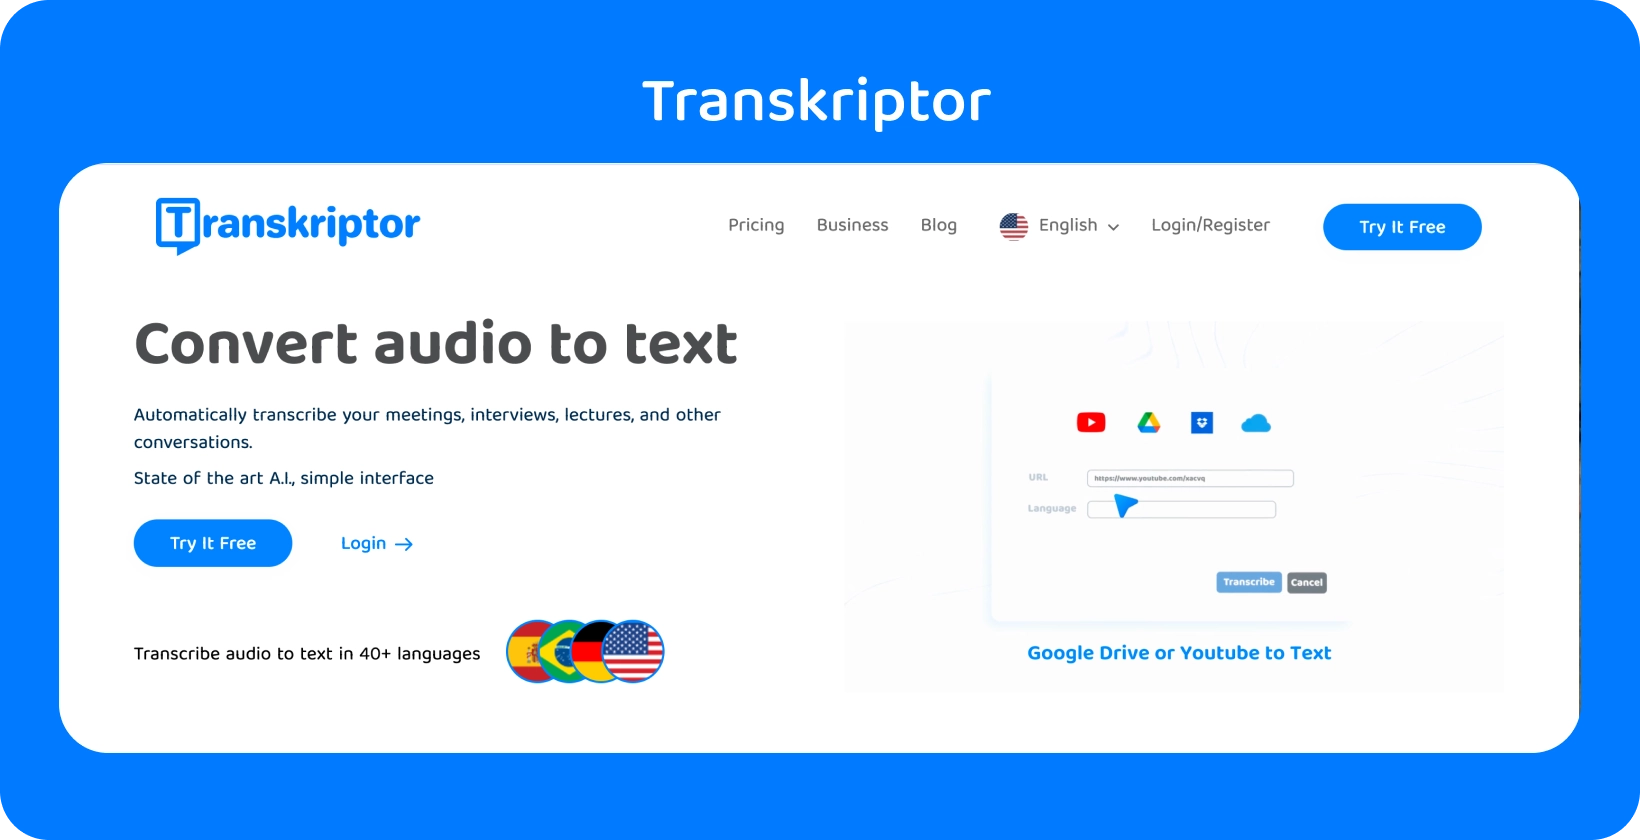 Transkriptor 웹페이지에는 '오디오를 텍스트로 변환' 기능이 언급되어 있어 쉽게 전사할 수 있습니다.